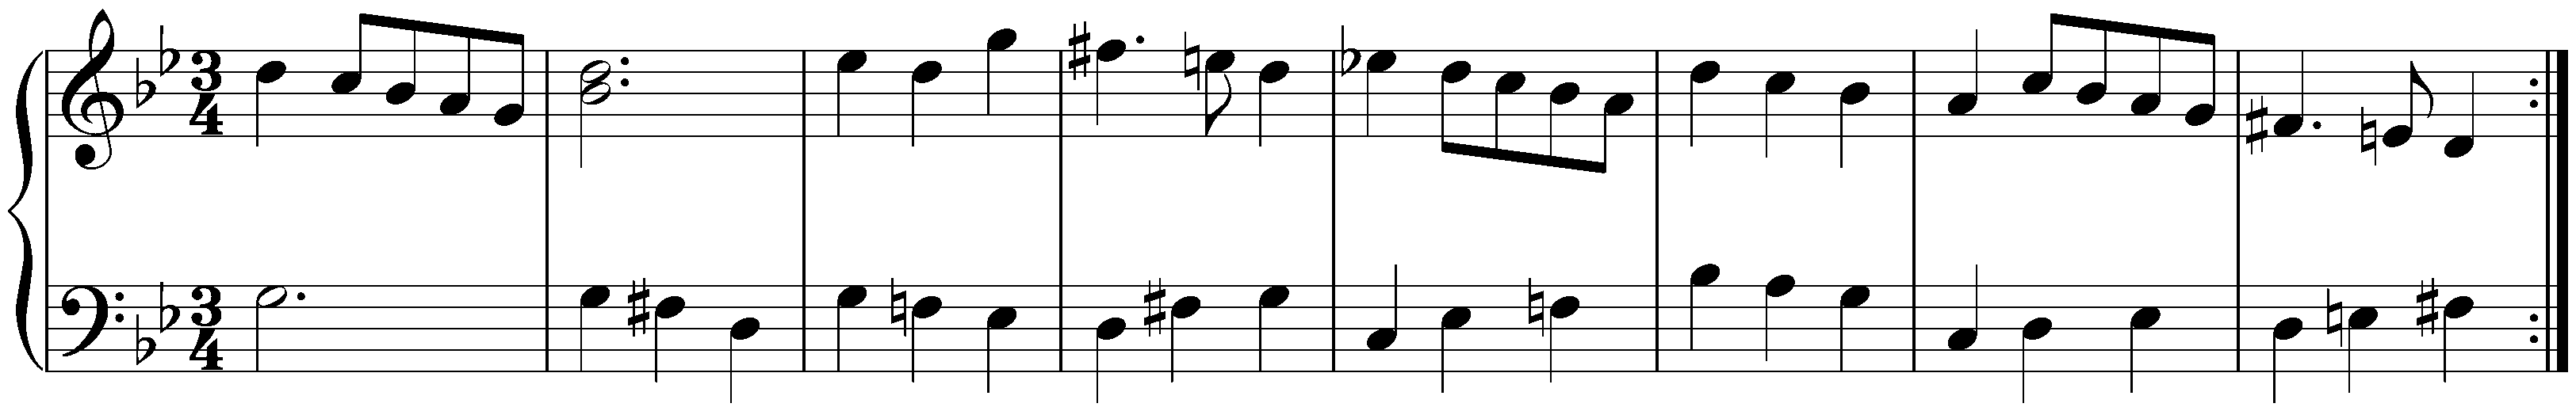 Suite in G minor, HWV 453; 3. Menuet I – Menuet II – Menuet I